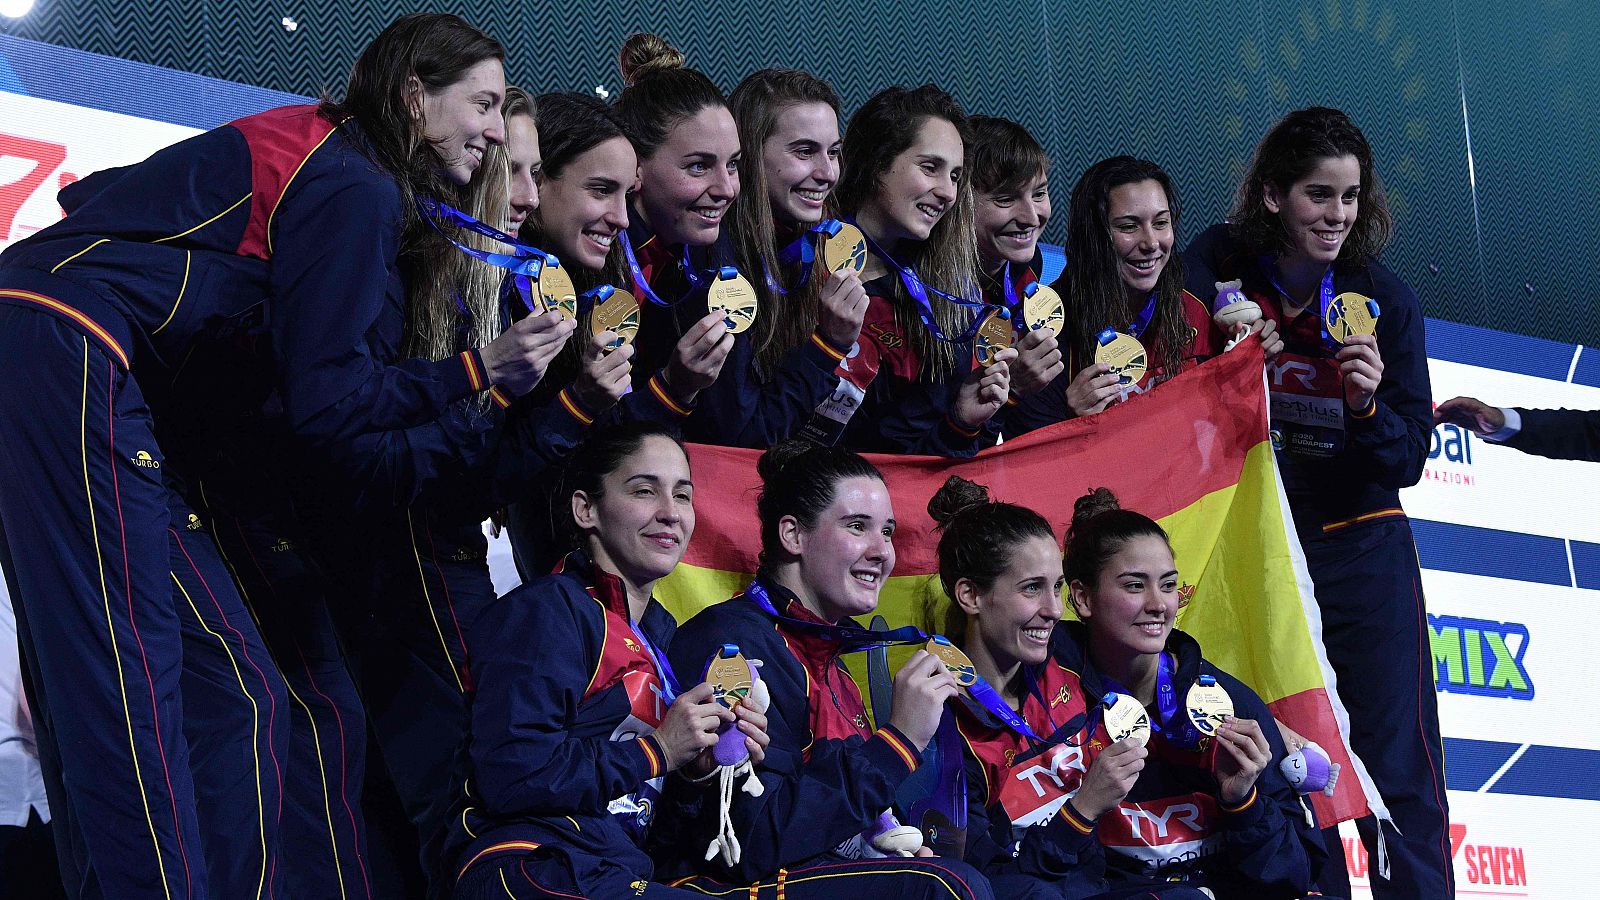 La selección española de waterpolo logra su séptima medalla en ocho años